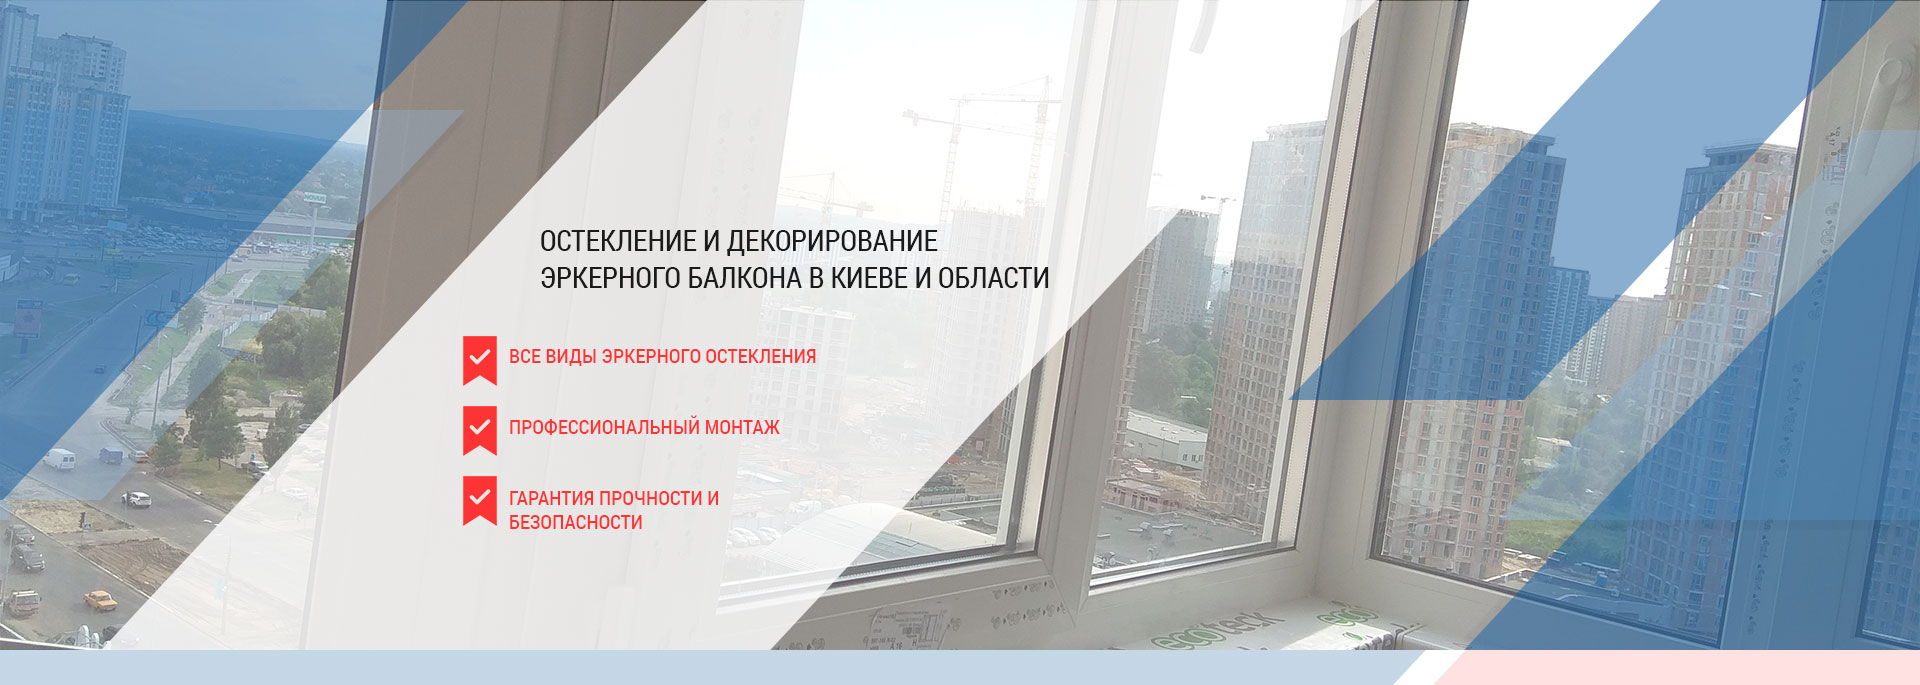 Еркерний балкон - скління і монтаж в Києві